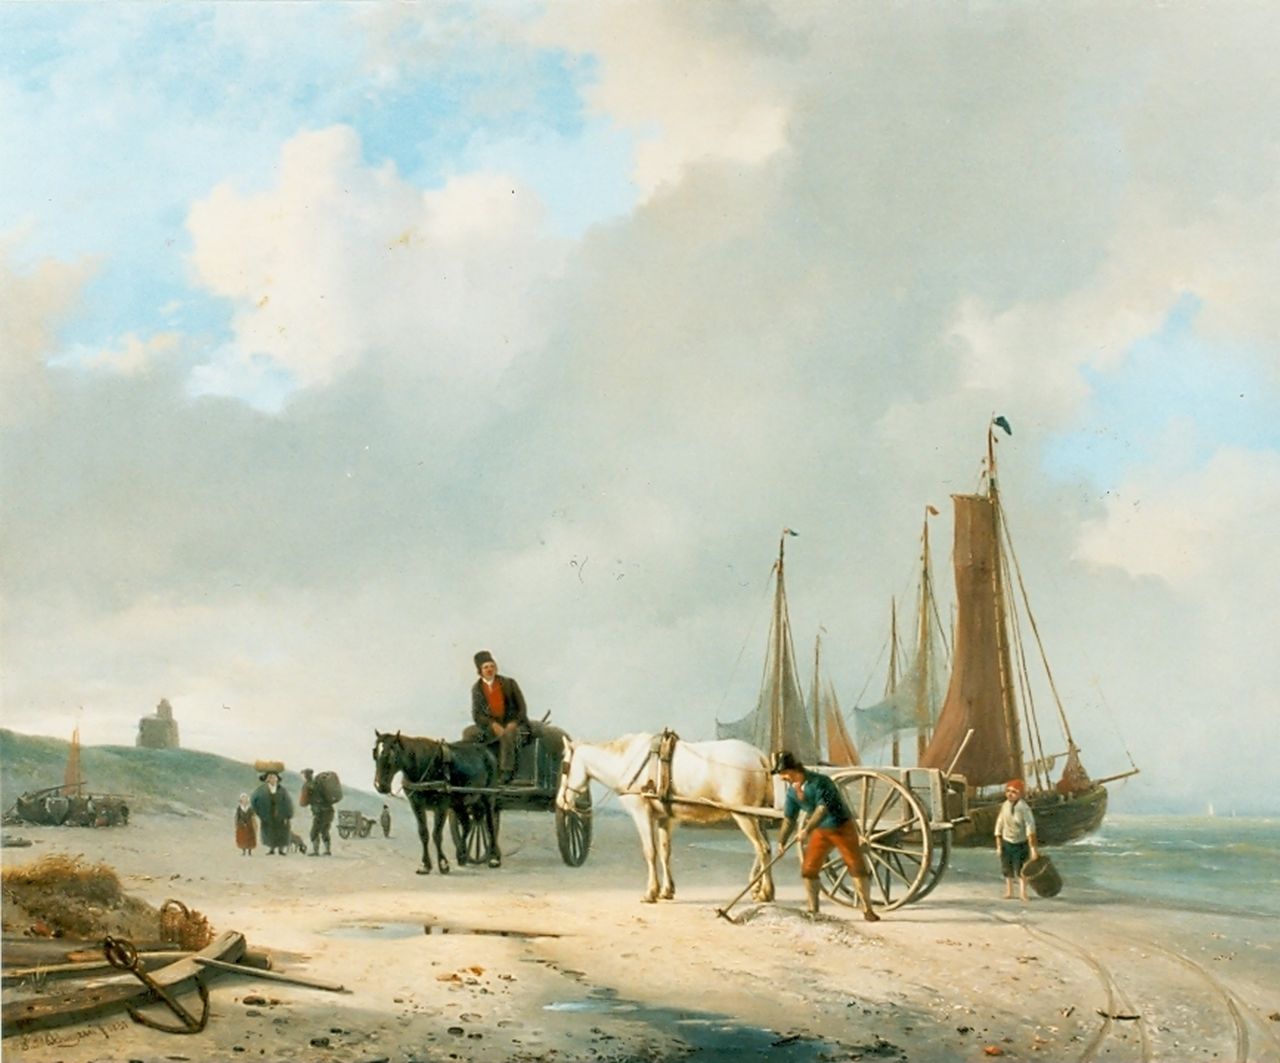 Sande Bakhuyzen H. van de | Hendrikus van de Sande Bakhuyzen, Schelpenvissers op het strand bij Oostende, olieverf op paneel 38,6 x 49,3 cm, gesigneerd linksonder en gedateerd 1831